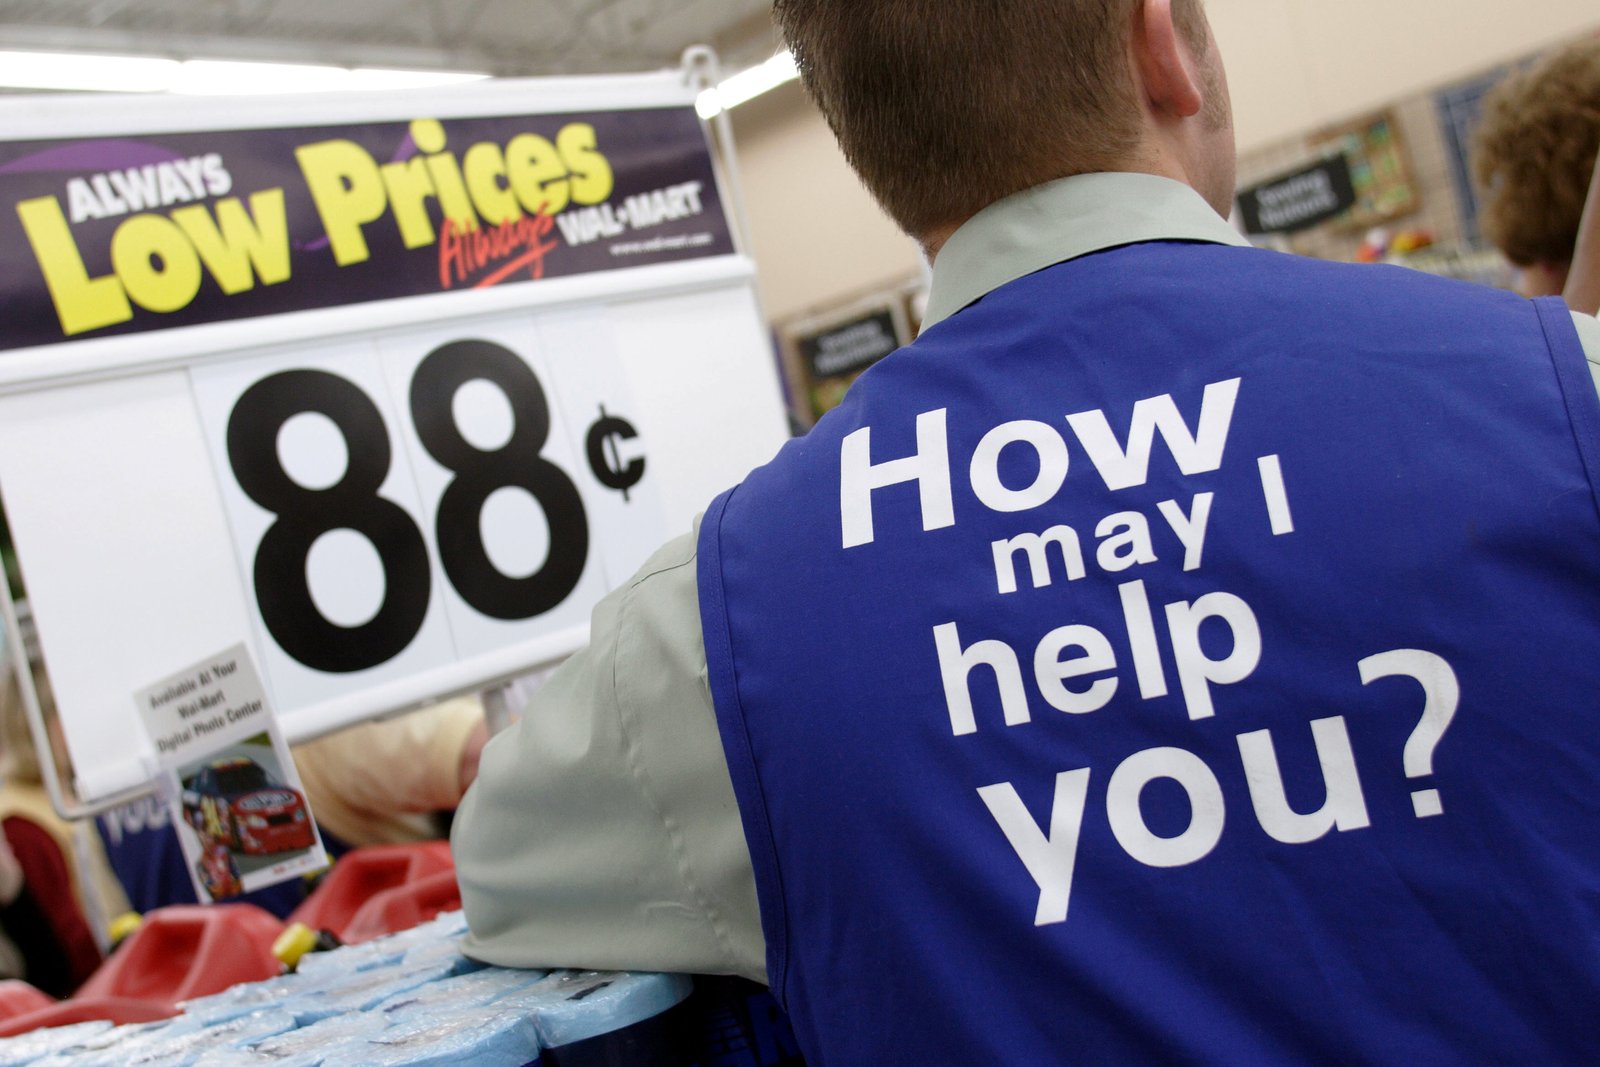 Kisah Walmart Dalam Penerapan Customer Focus Tidak Efektif